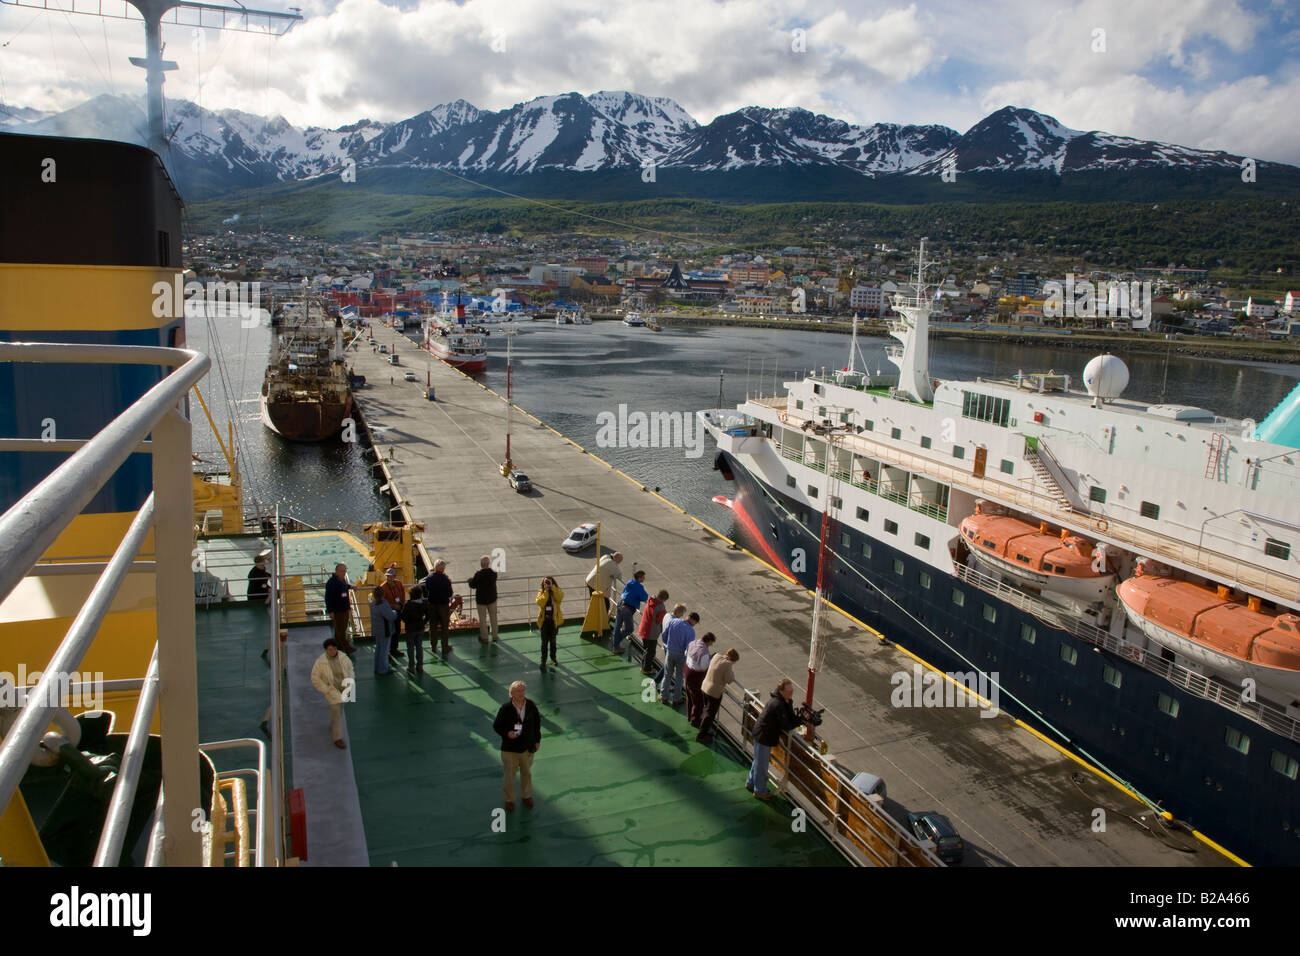 Les passagers de croisière à bord des navires de croisière antarctique prépare à partir de l'orifice à Ushuaia, Tierra del Fuego, Argentine des Andes background Banque D'Images